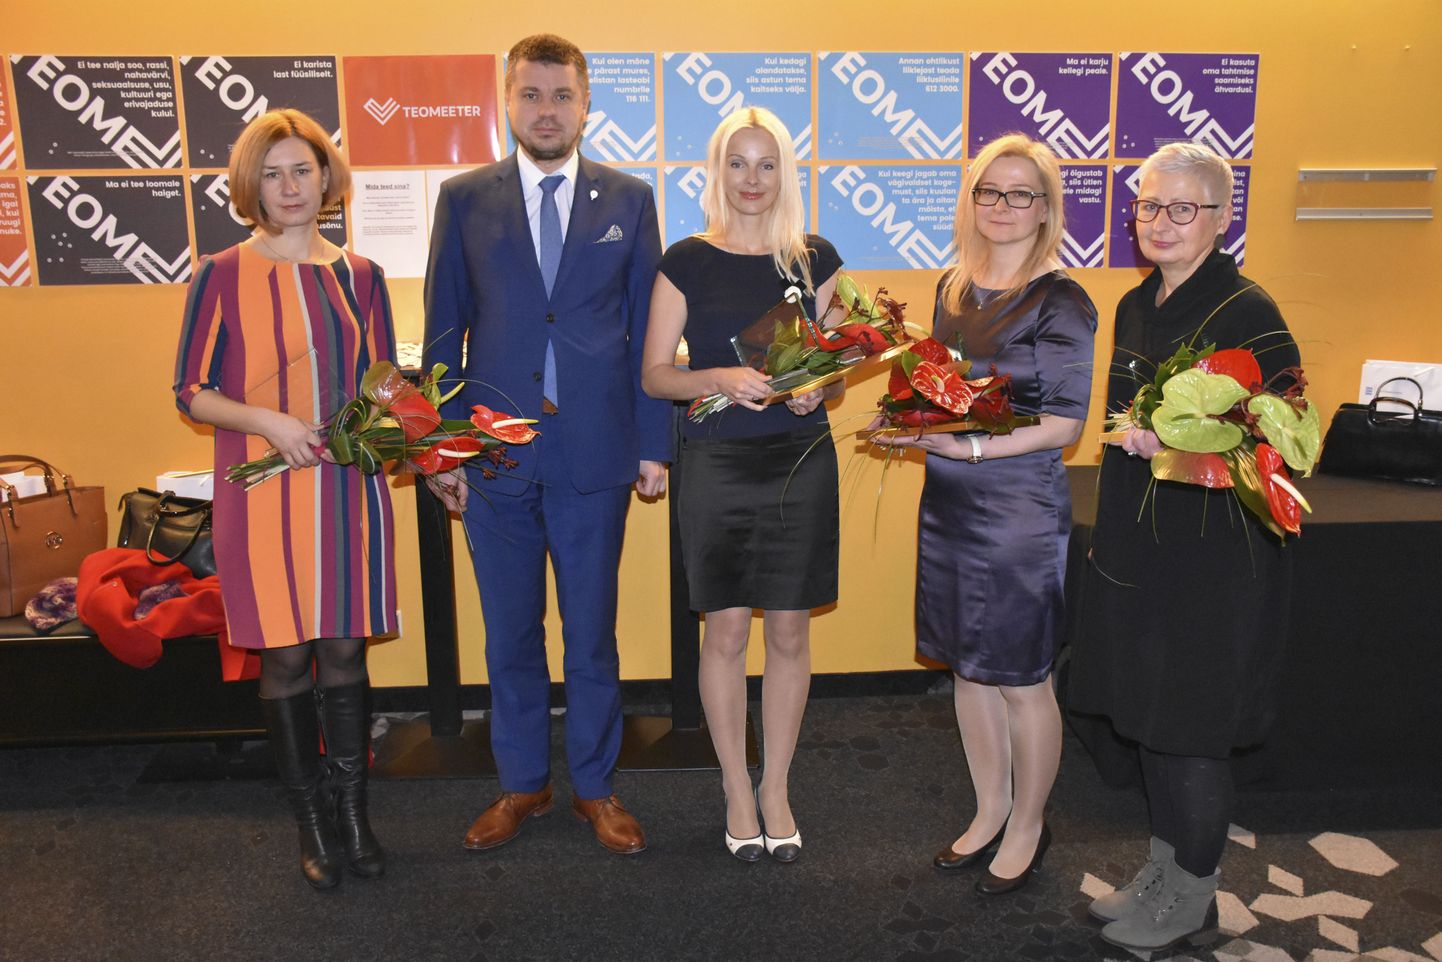 Esmaspäeval tunnustuse vastu võtnud vägivallaennetajad Lavly Perling (vasakult), Mariana Saksniit, Merle Albrant ja Margo Orupõld, keskel justiitsminister Urmas Reinsalu.